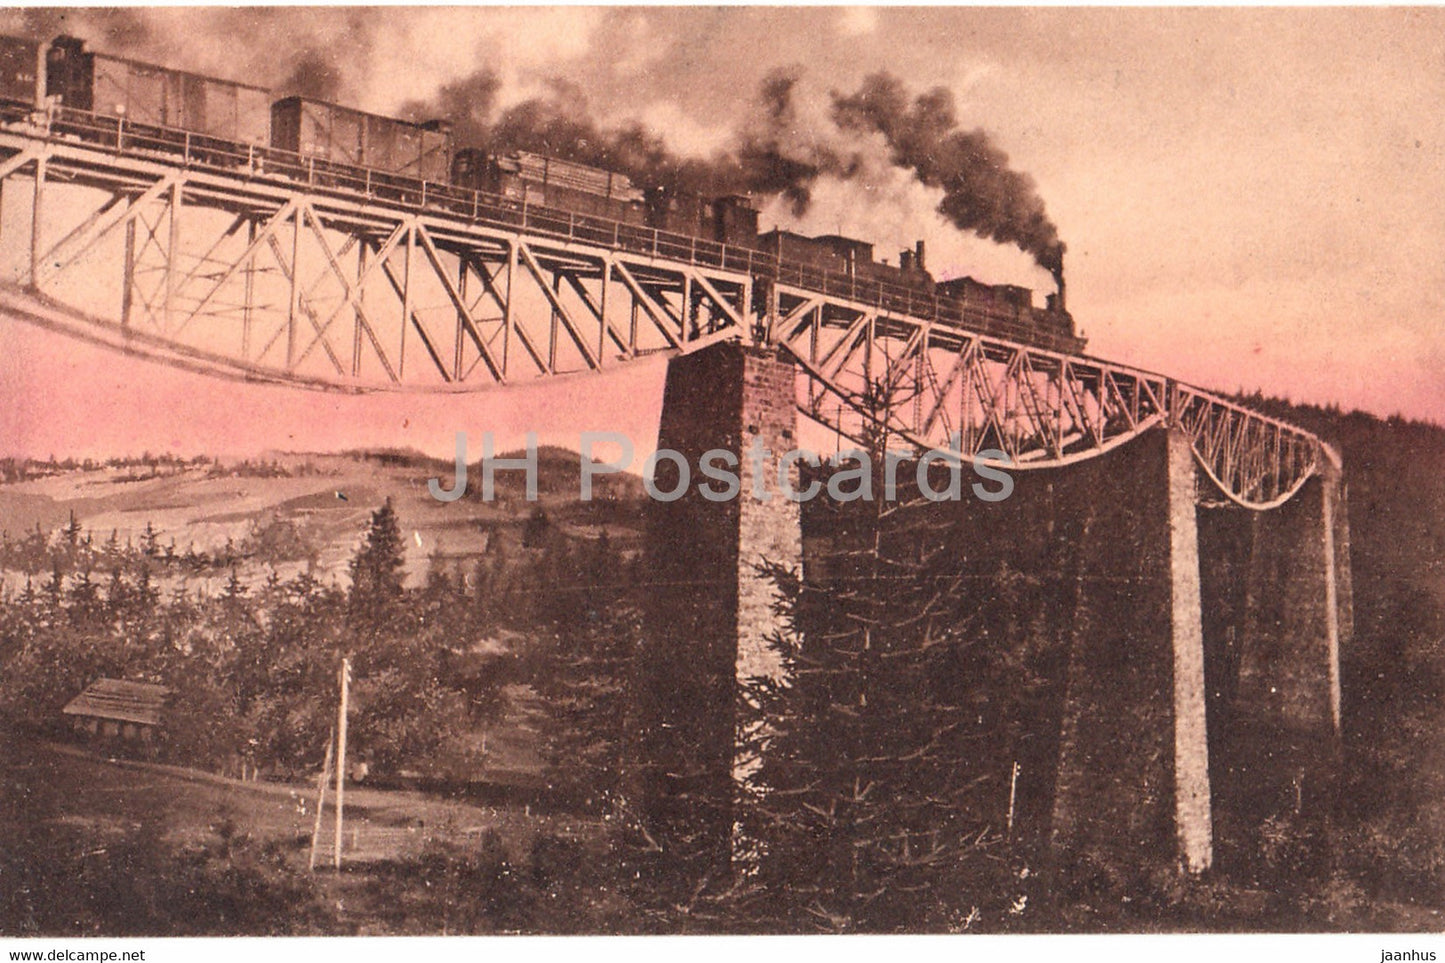 Railway Bridge - train - Ser 81 - old postcard - 1910 - Poland - unused - JH Postcards